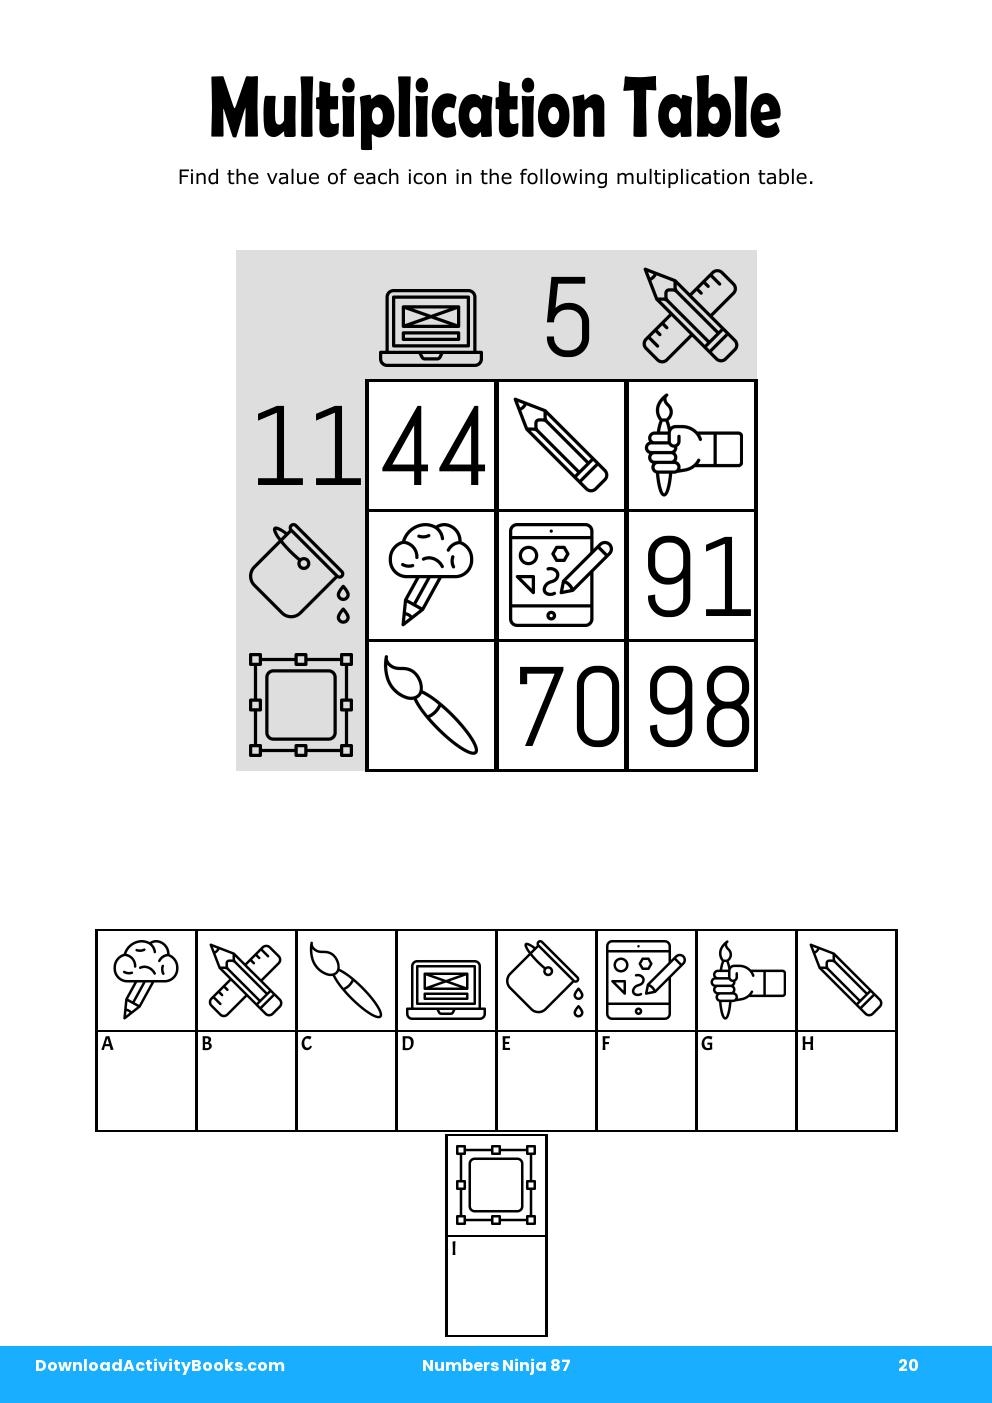 Multiplication Table in Numbers Ninja 87